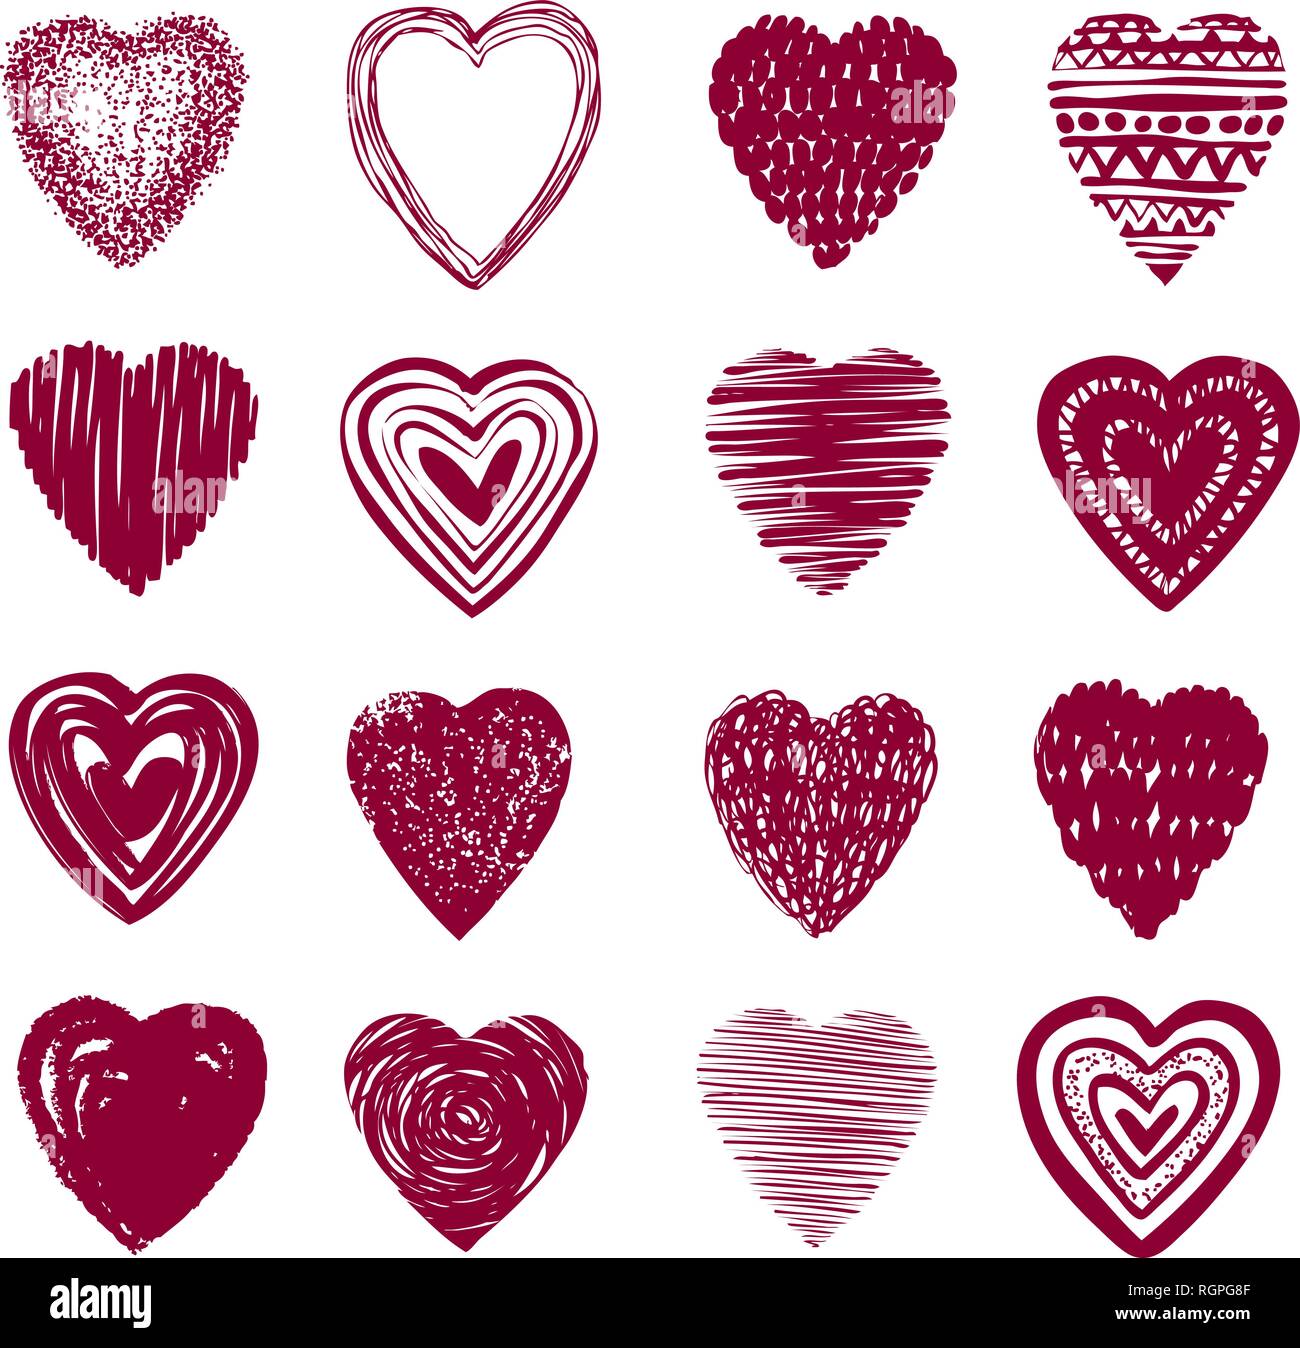 Rotes Herz Set von Symbolen. Liebe, Valentinstag, Romantik Symbol oder Label. Vector Illustration Stock Vektor